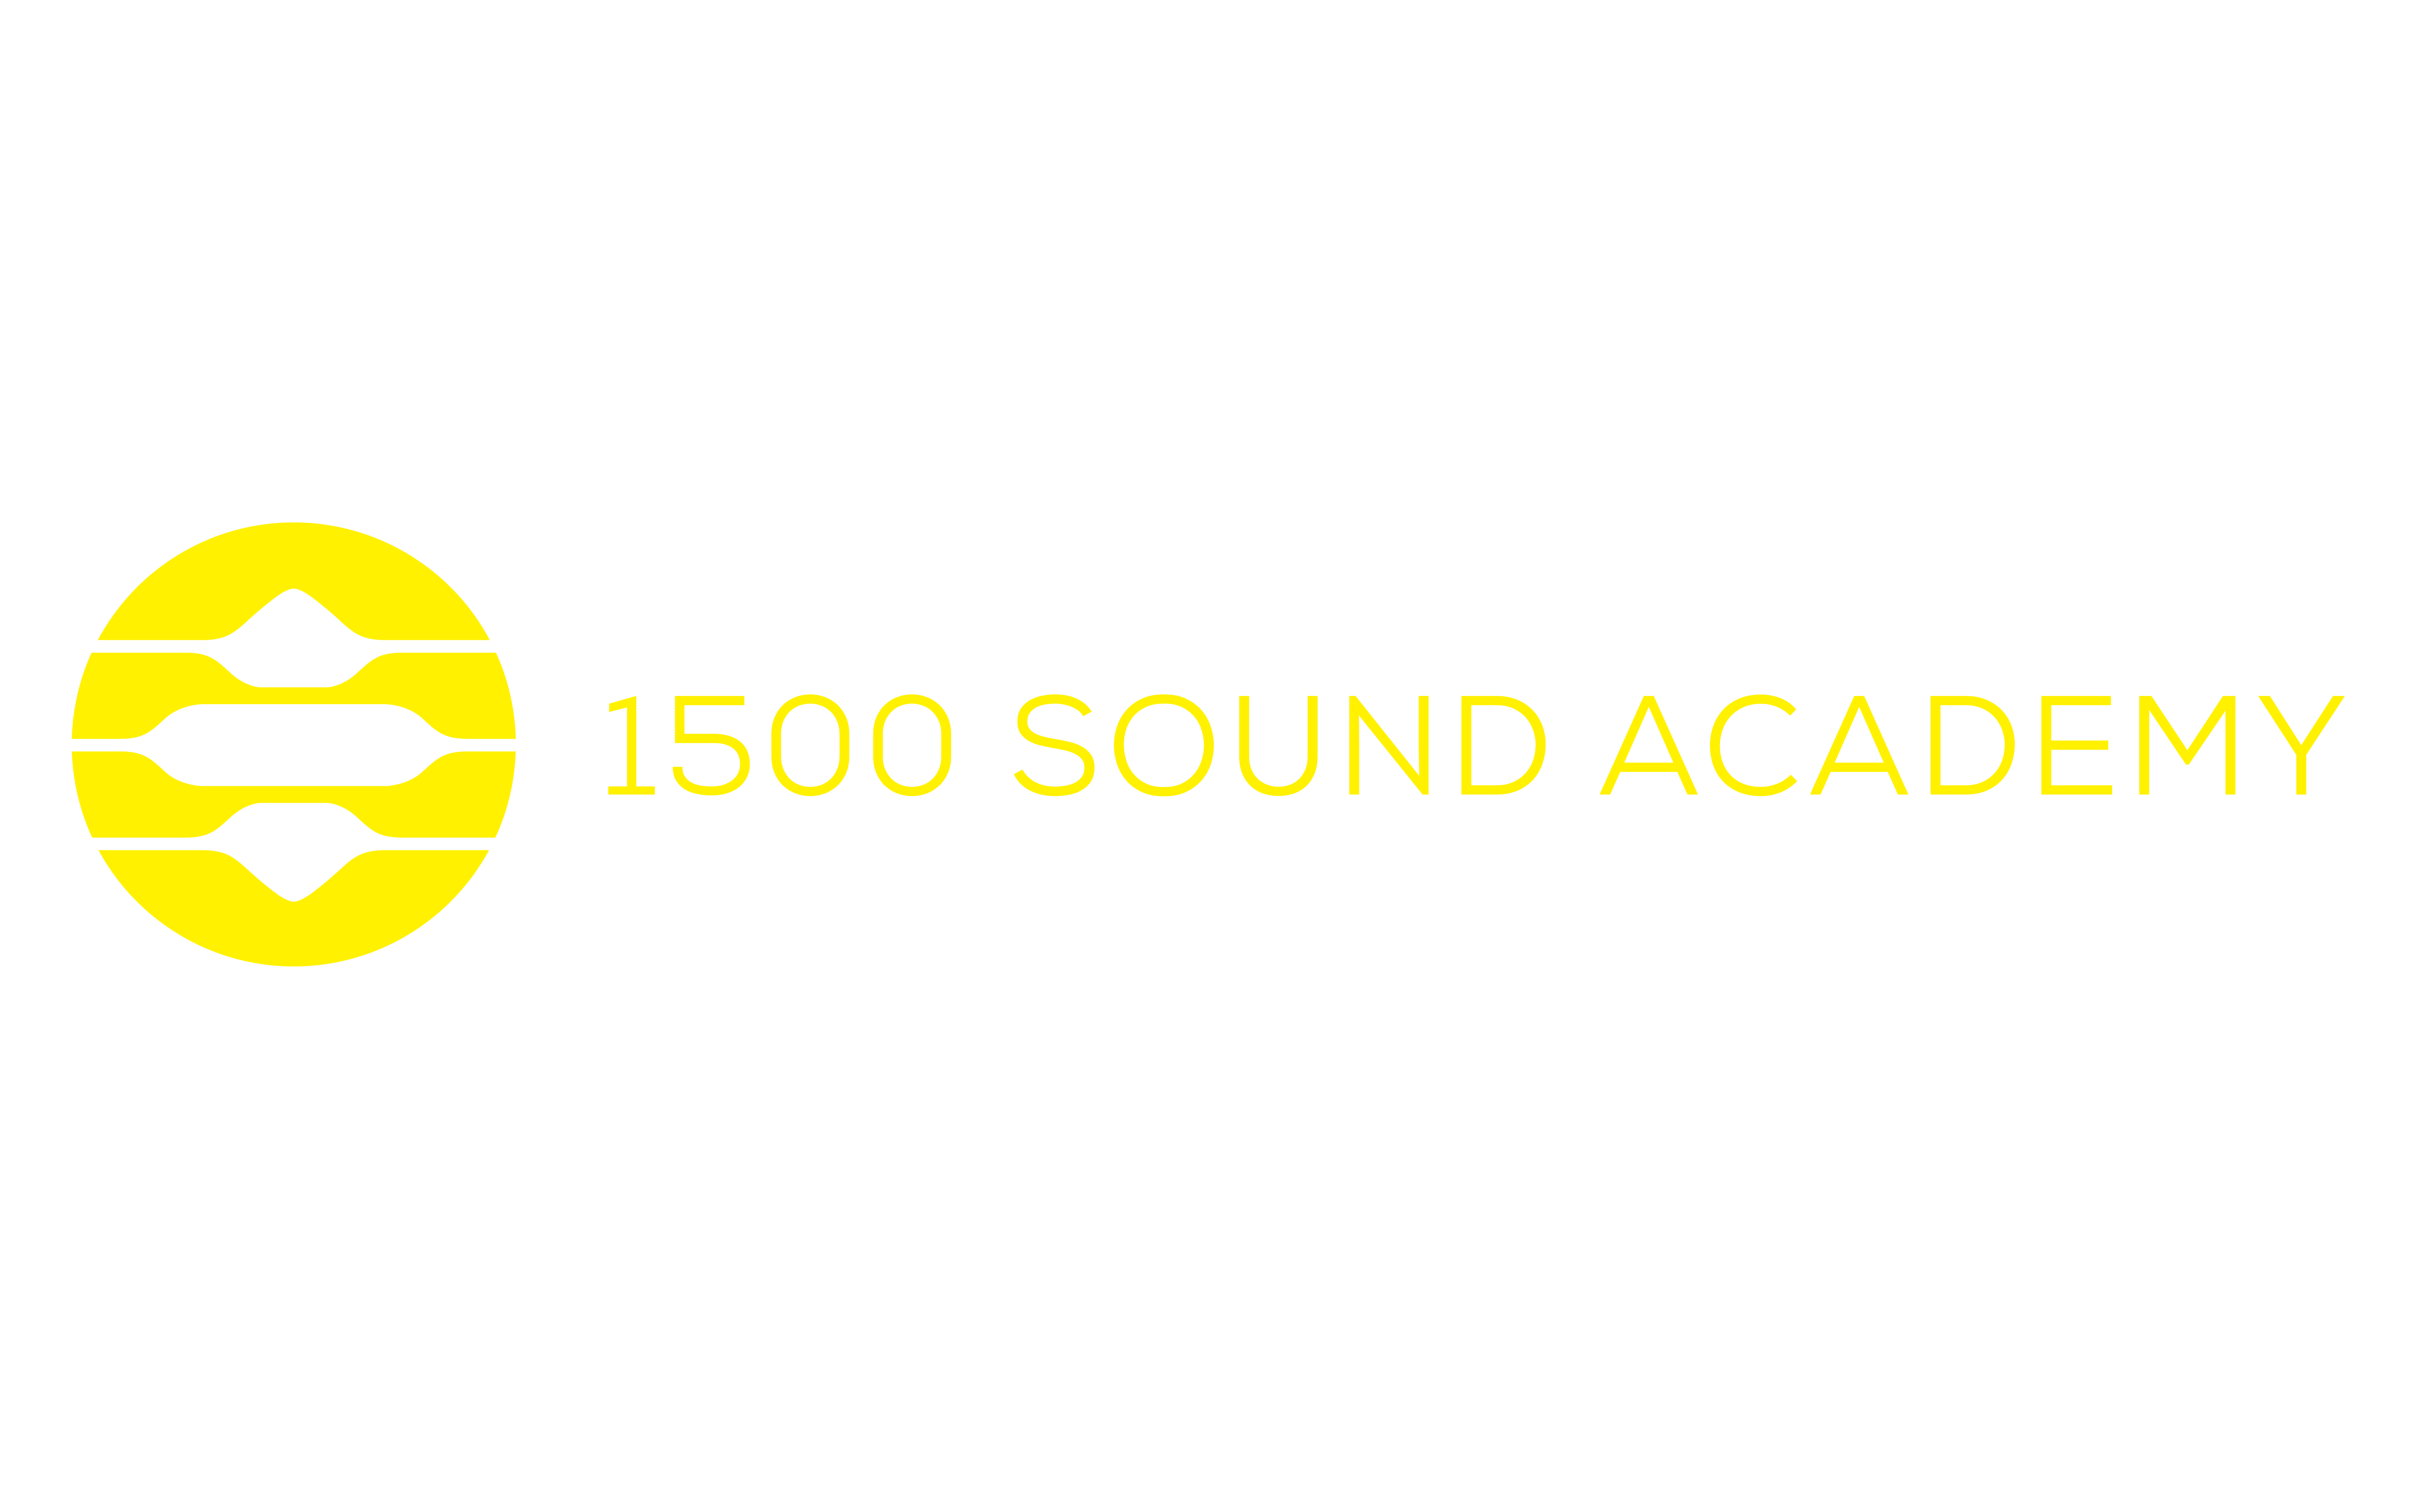 1500 Sound Academy Asia